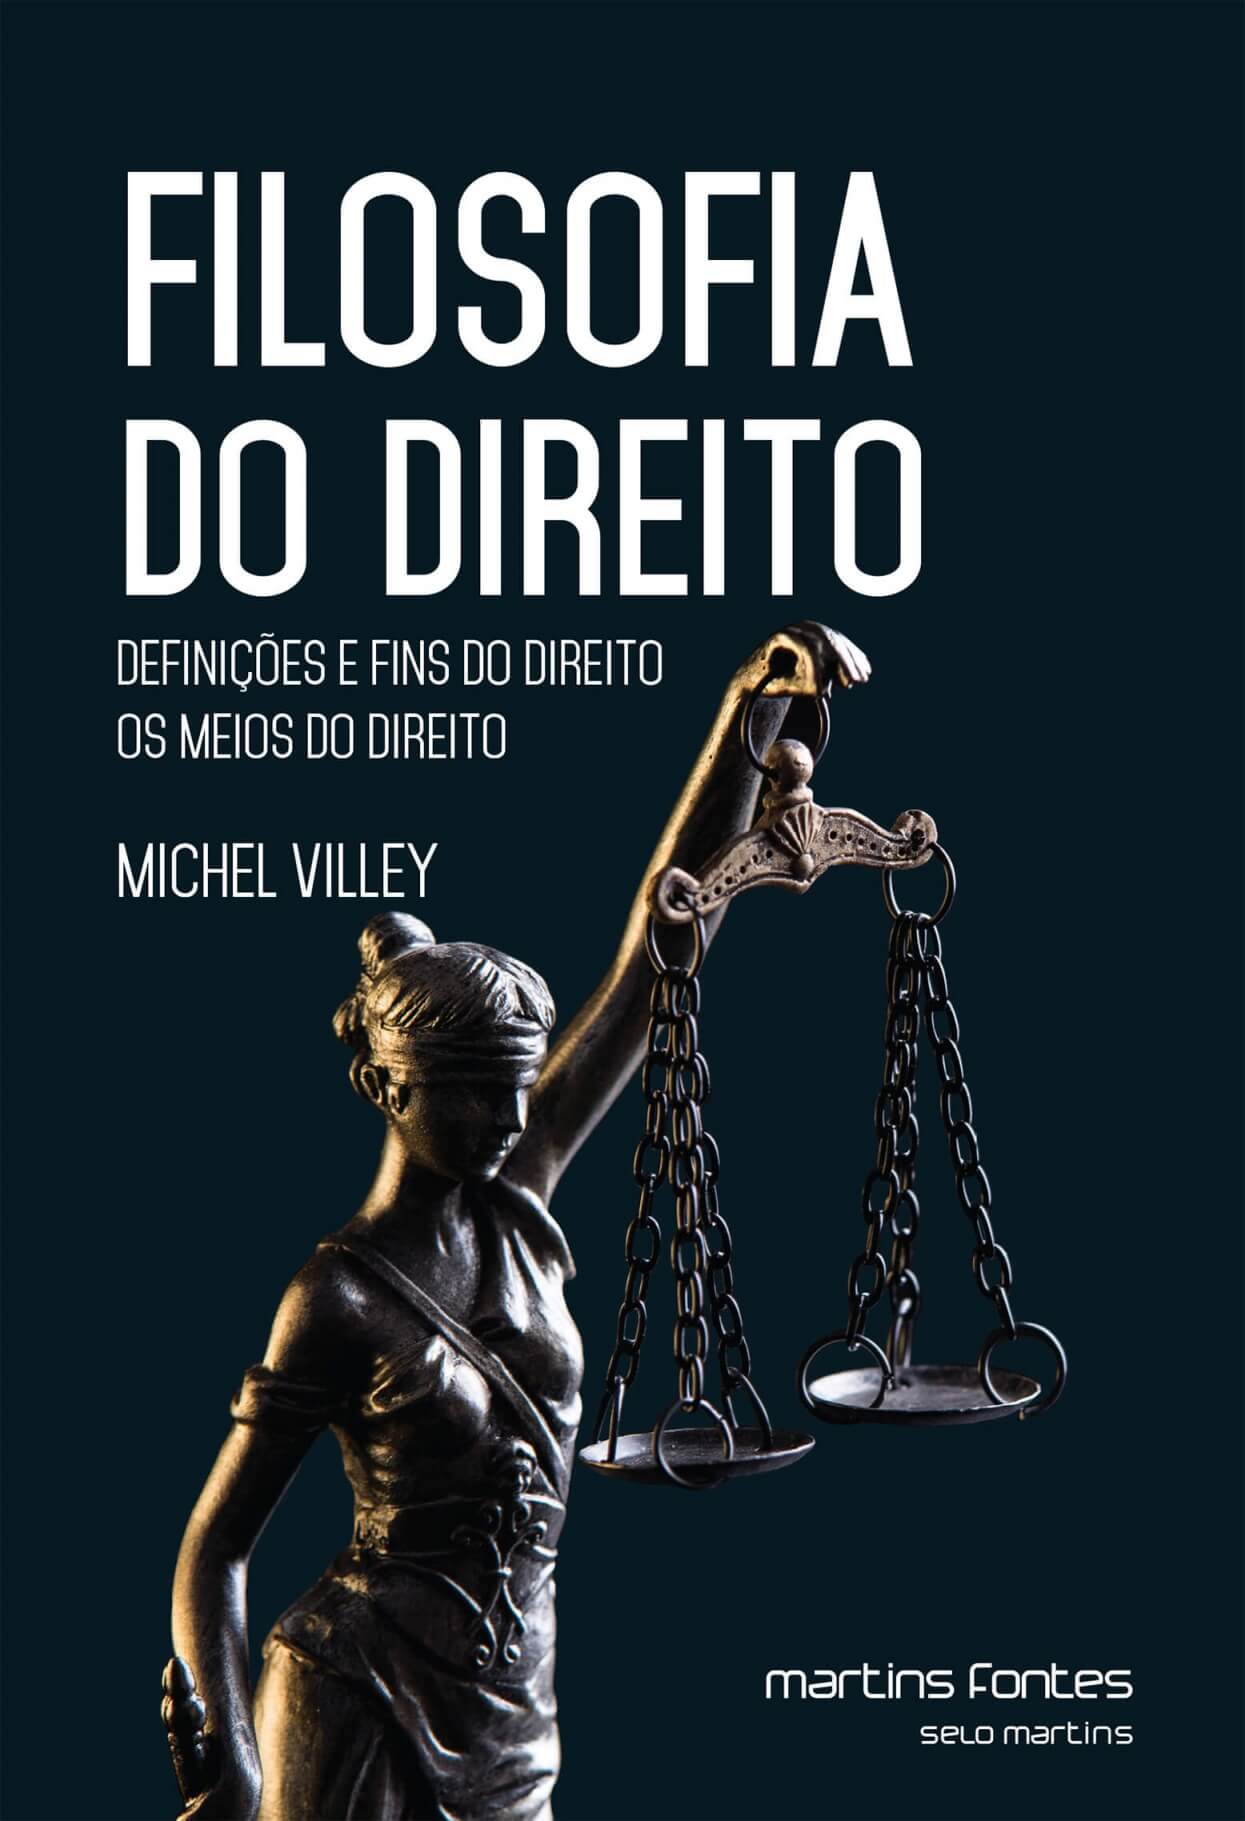 Filosofia do Direito: Definições e fins do Direito - Os meios do Direito  - Martins Fontes